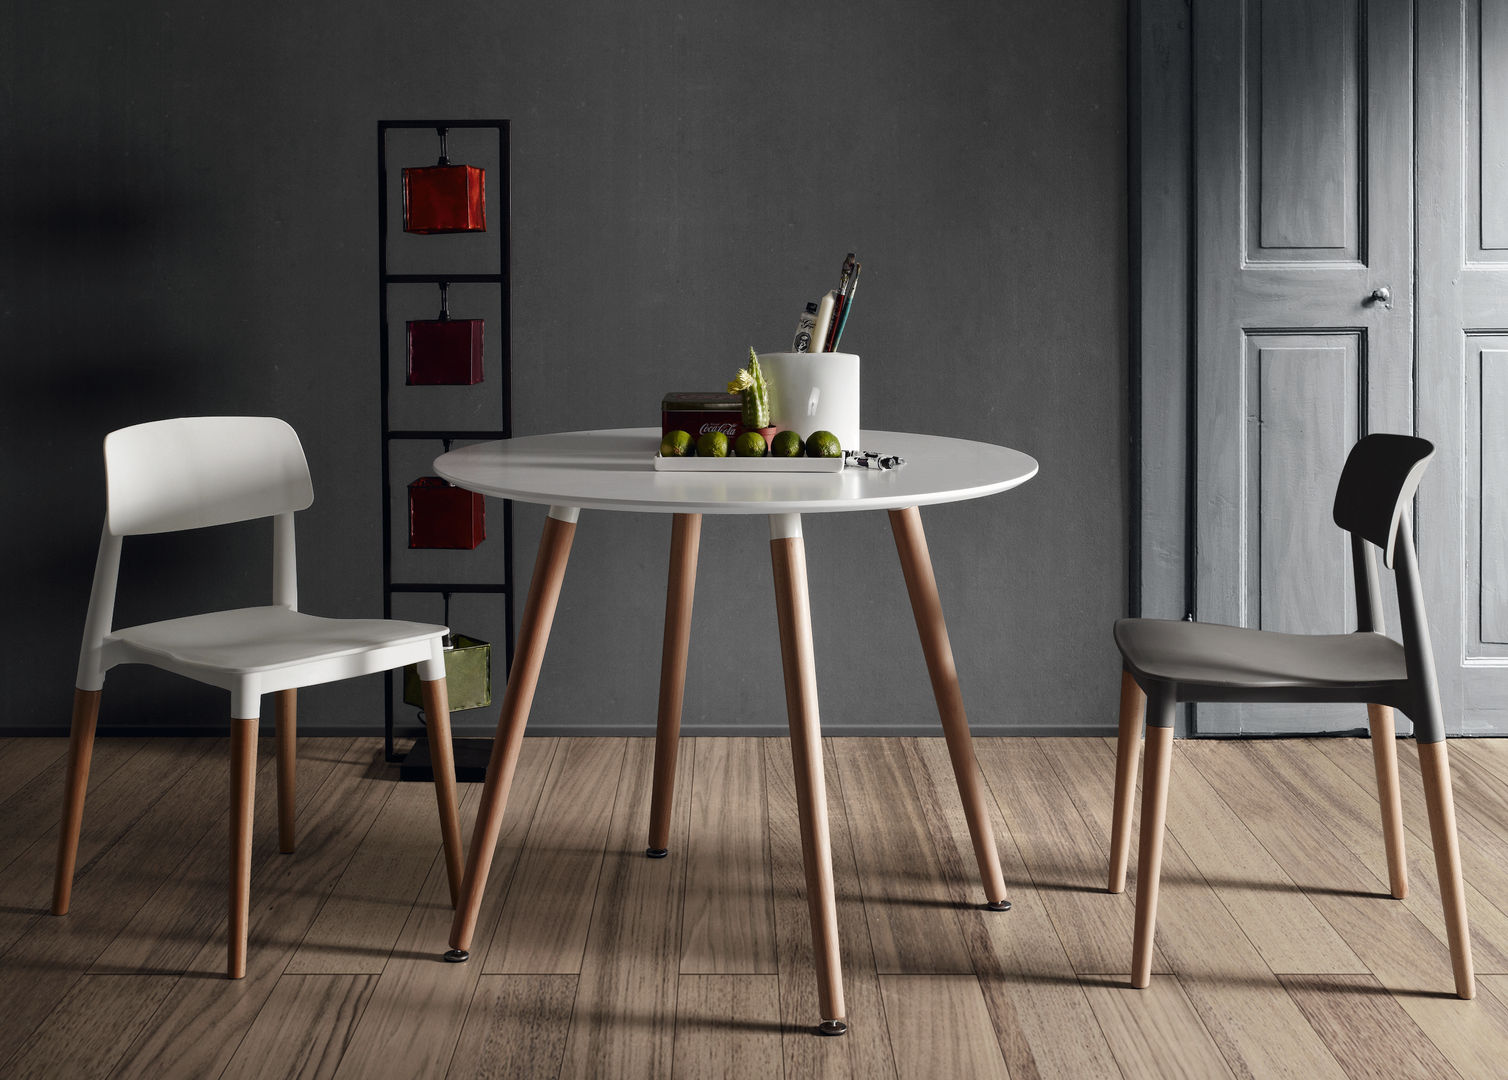 Jadalnia w bieli i drewnie, Le Pukka Concept Store Le Pukka Concept Store Scandinavian style dining room Tables